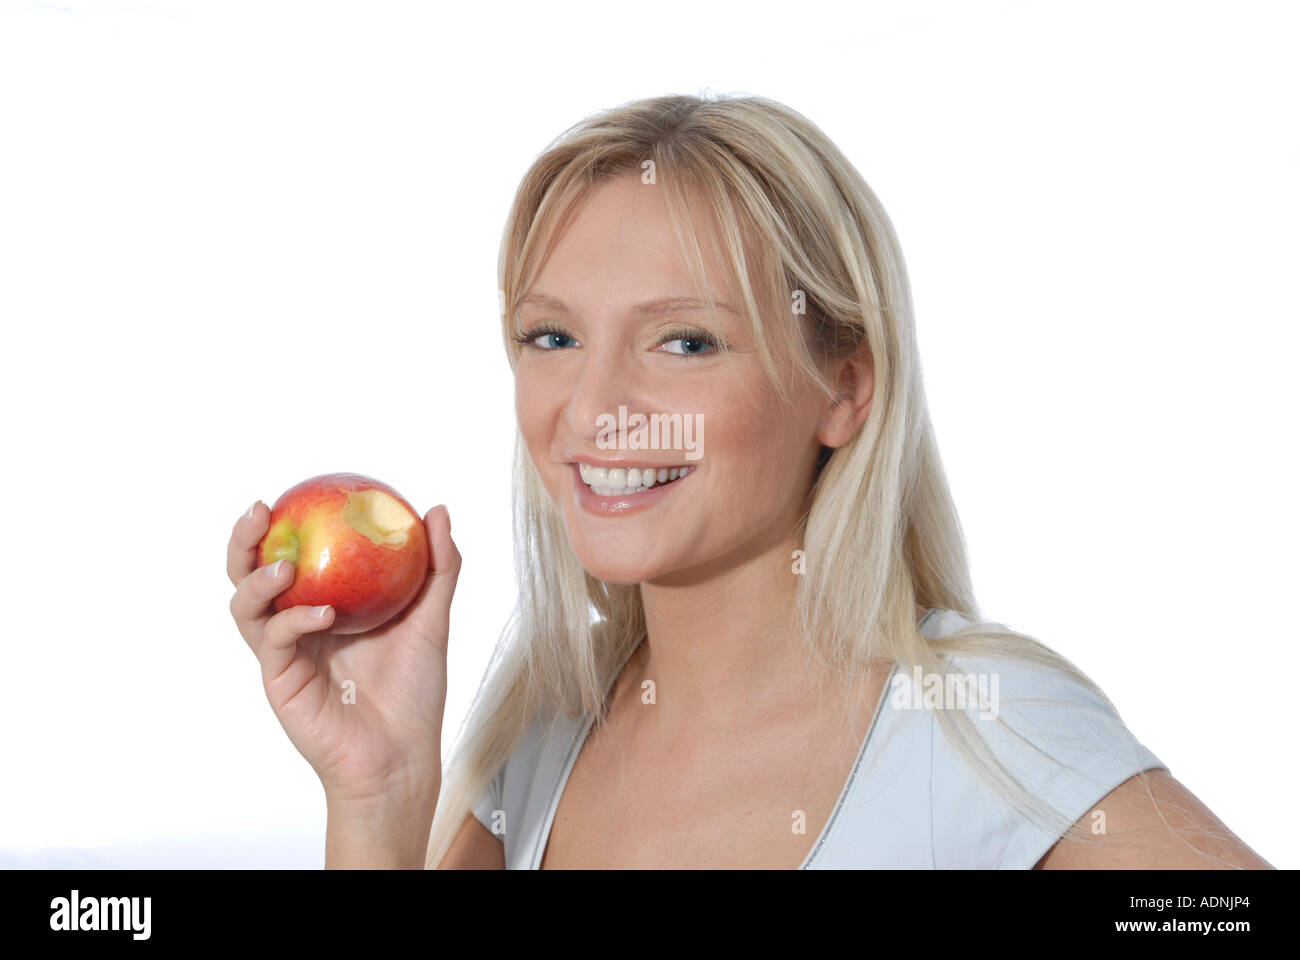 Junge Frau blond lacht laechelt freundlich positiv Aepfel Apfel essen rot Obst gesund Vitamine Stock Photo